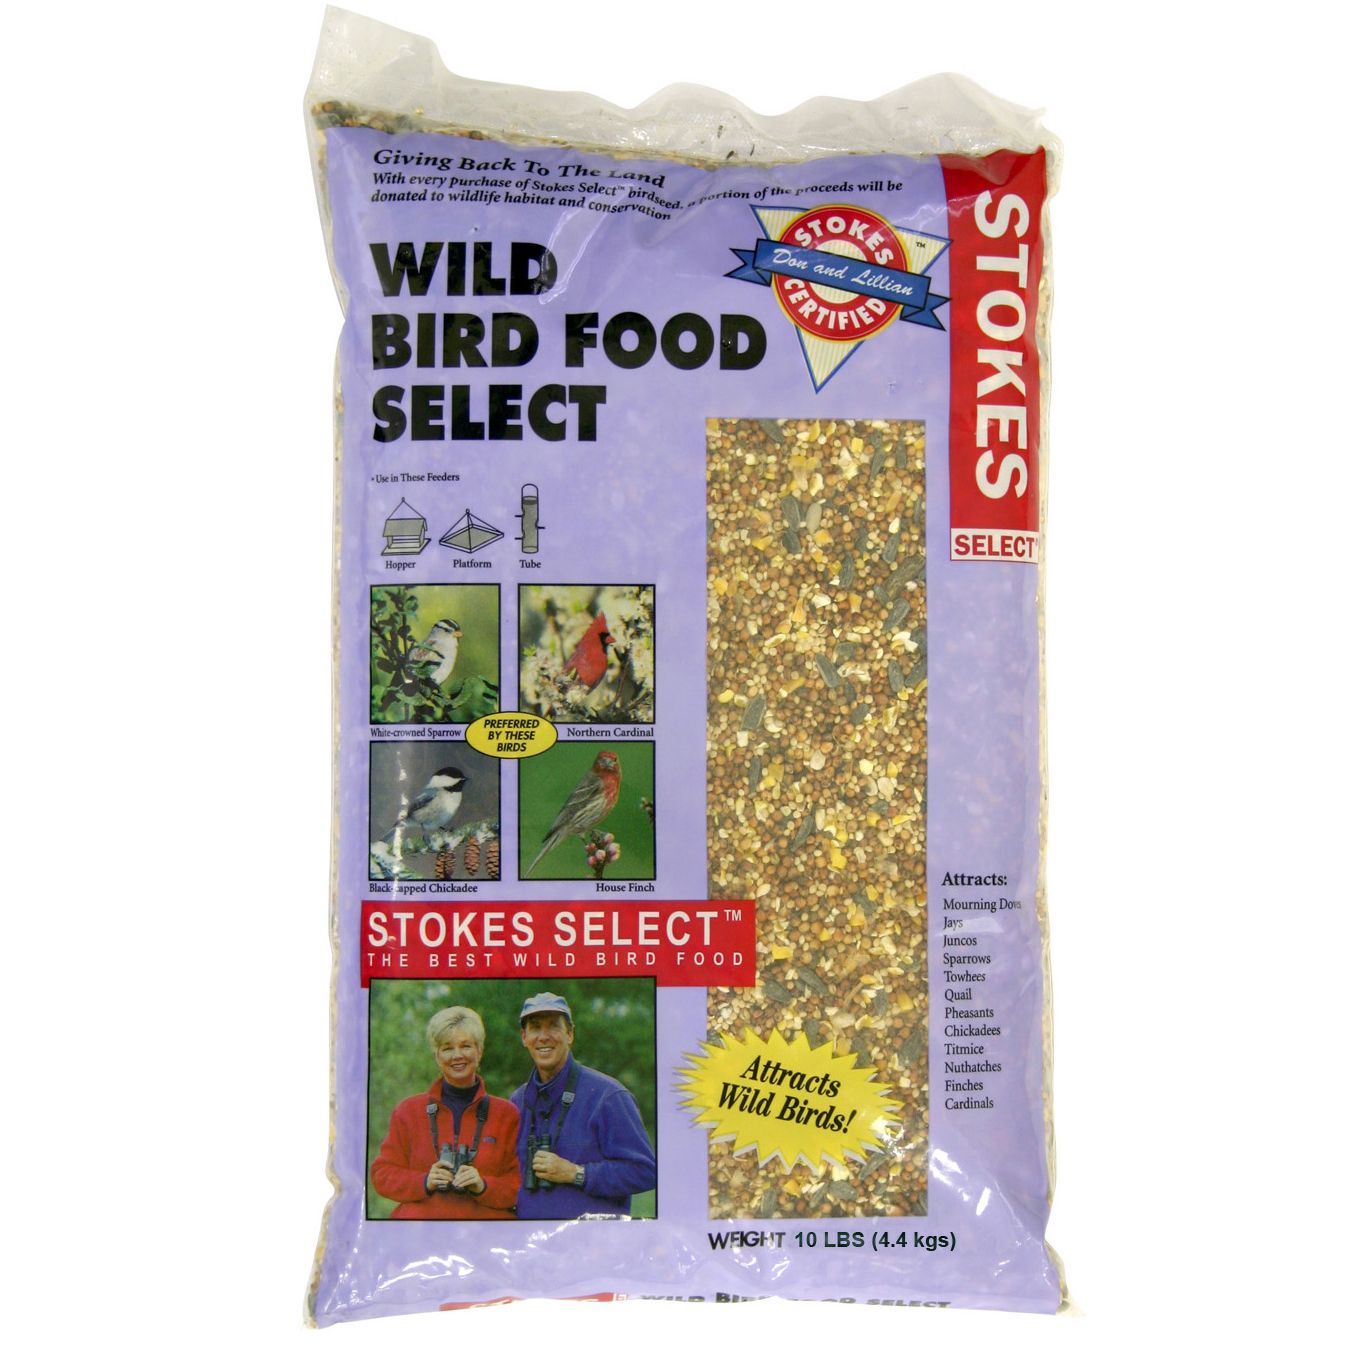 Stokes Select® 10lb Wild Bird Food—$3.49!